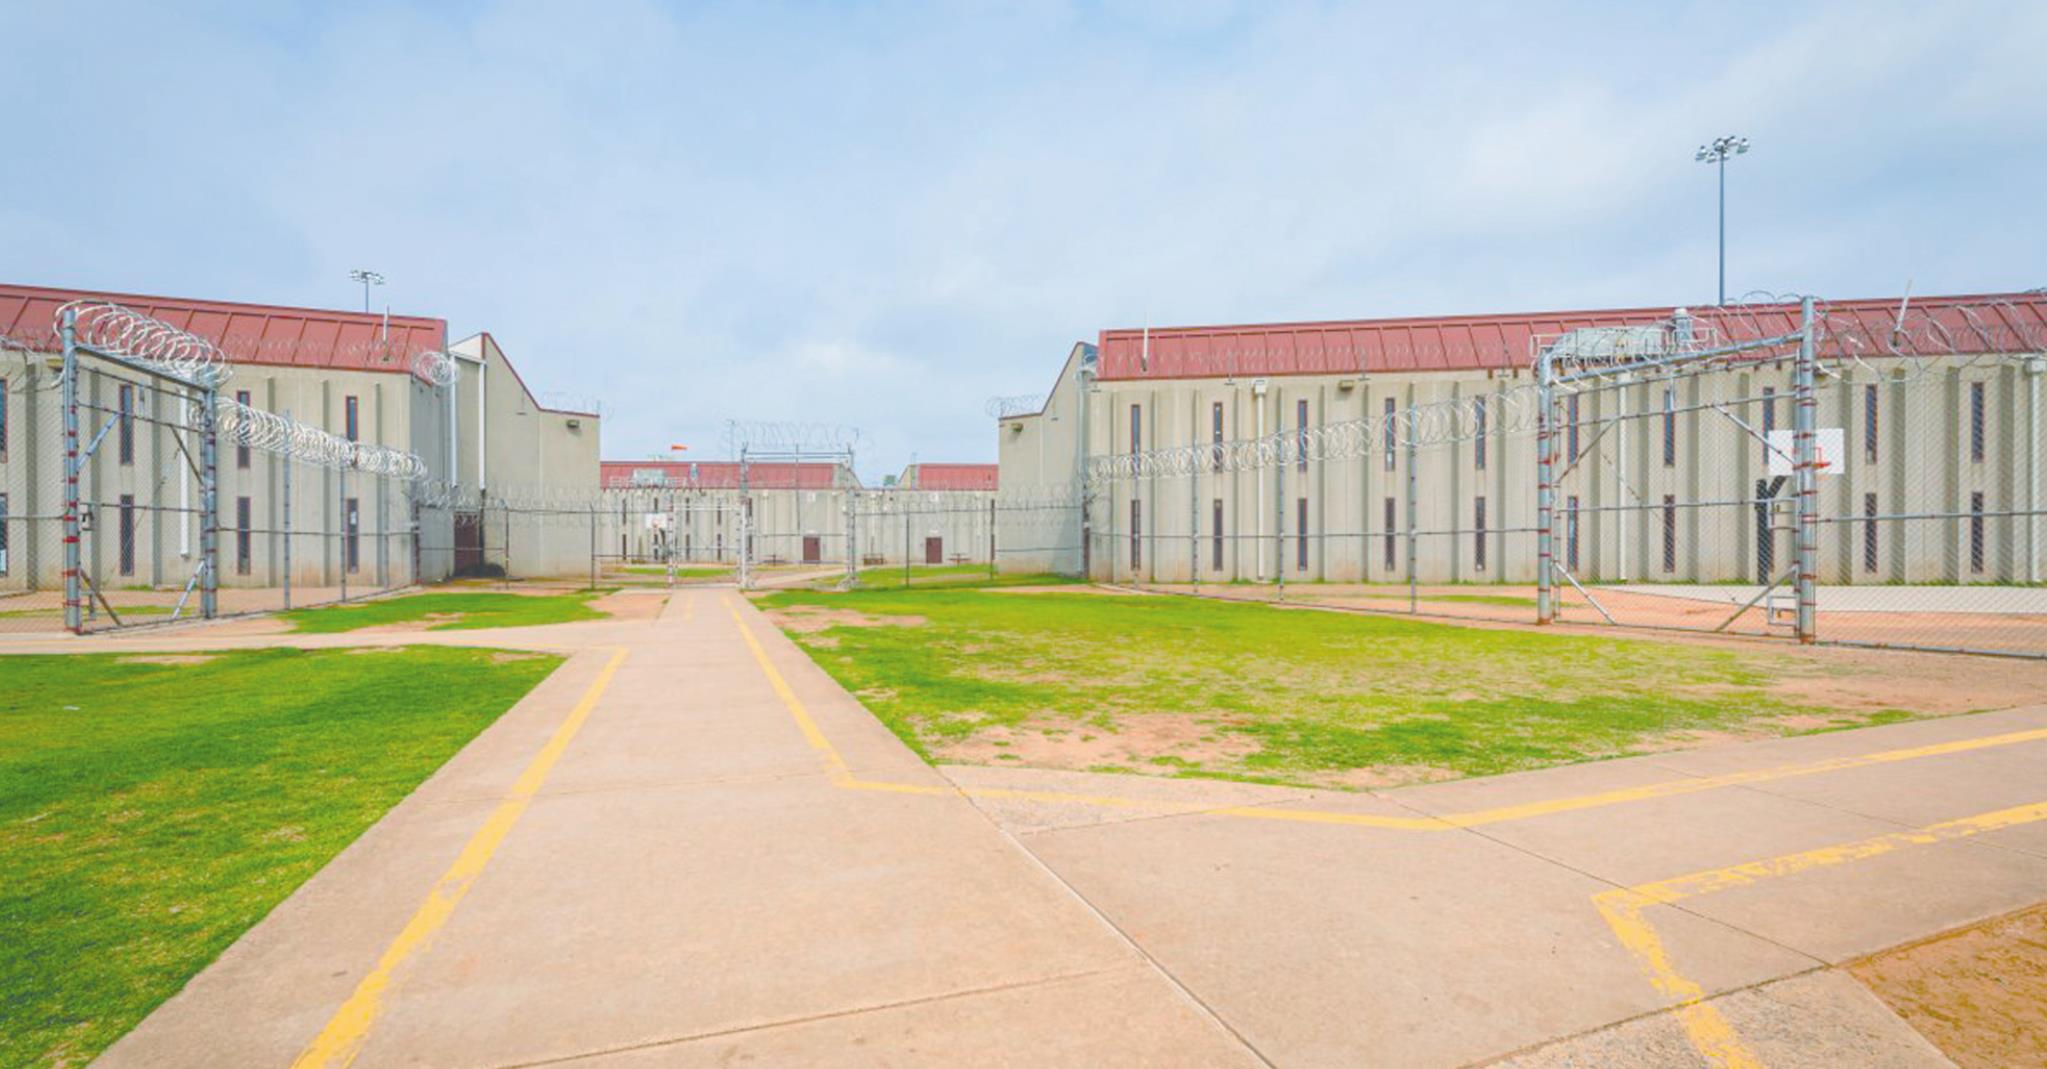 davis correctional facility